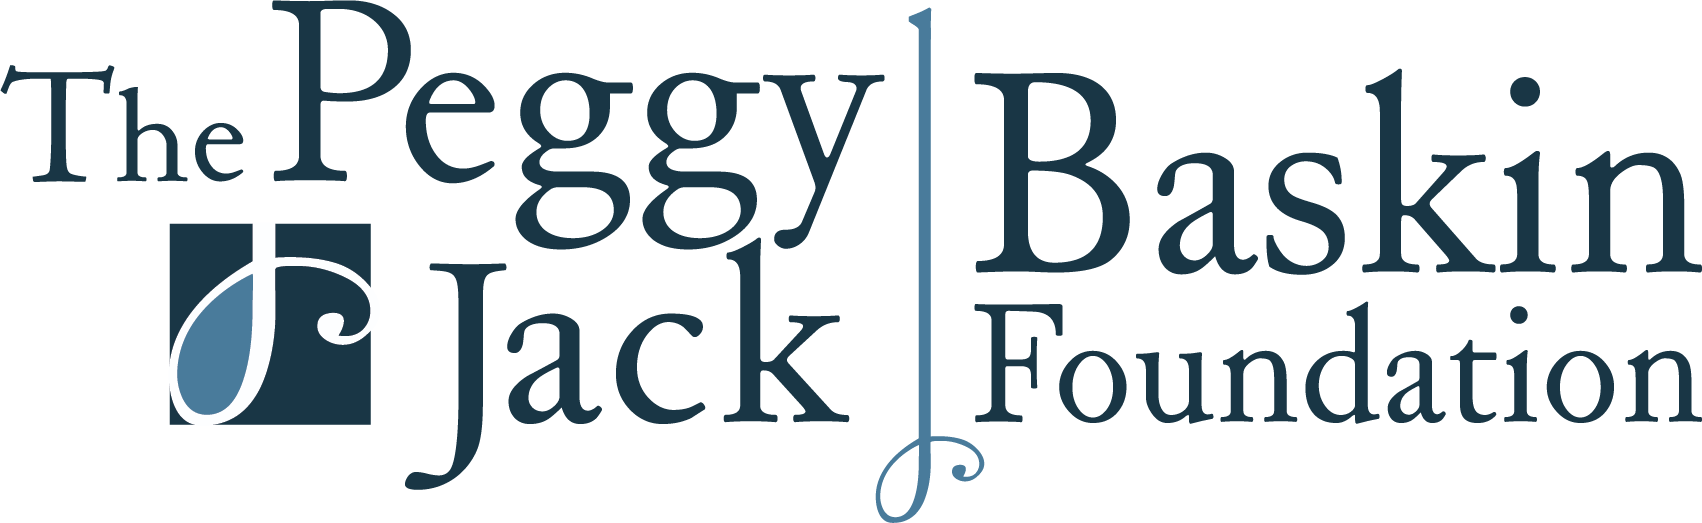 The Peggy and Jack Baskin Foundation Logo